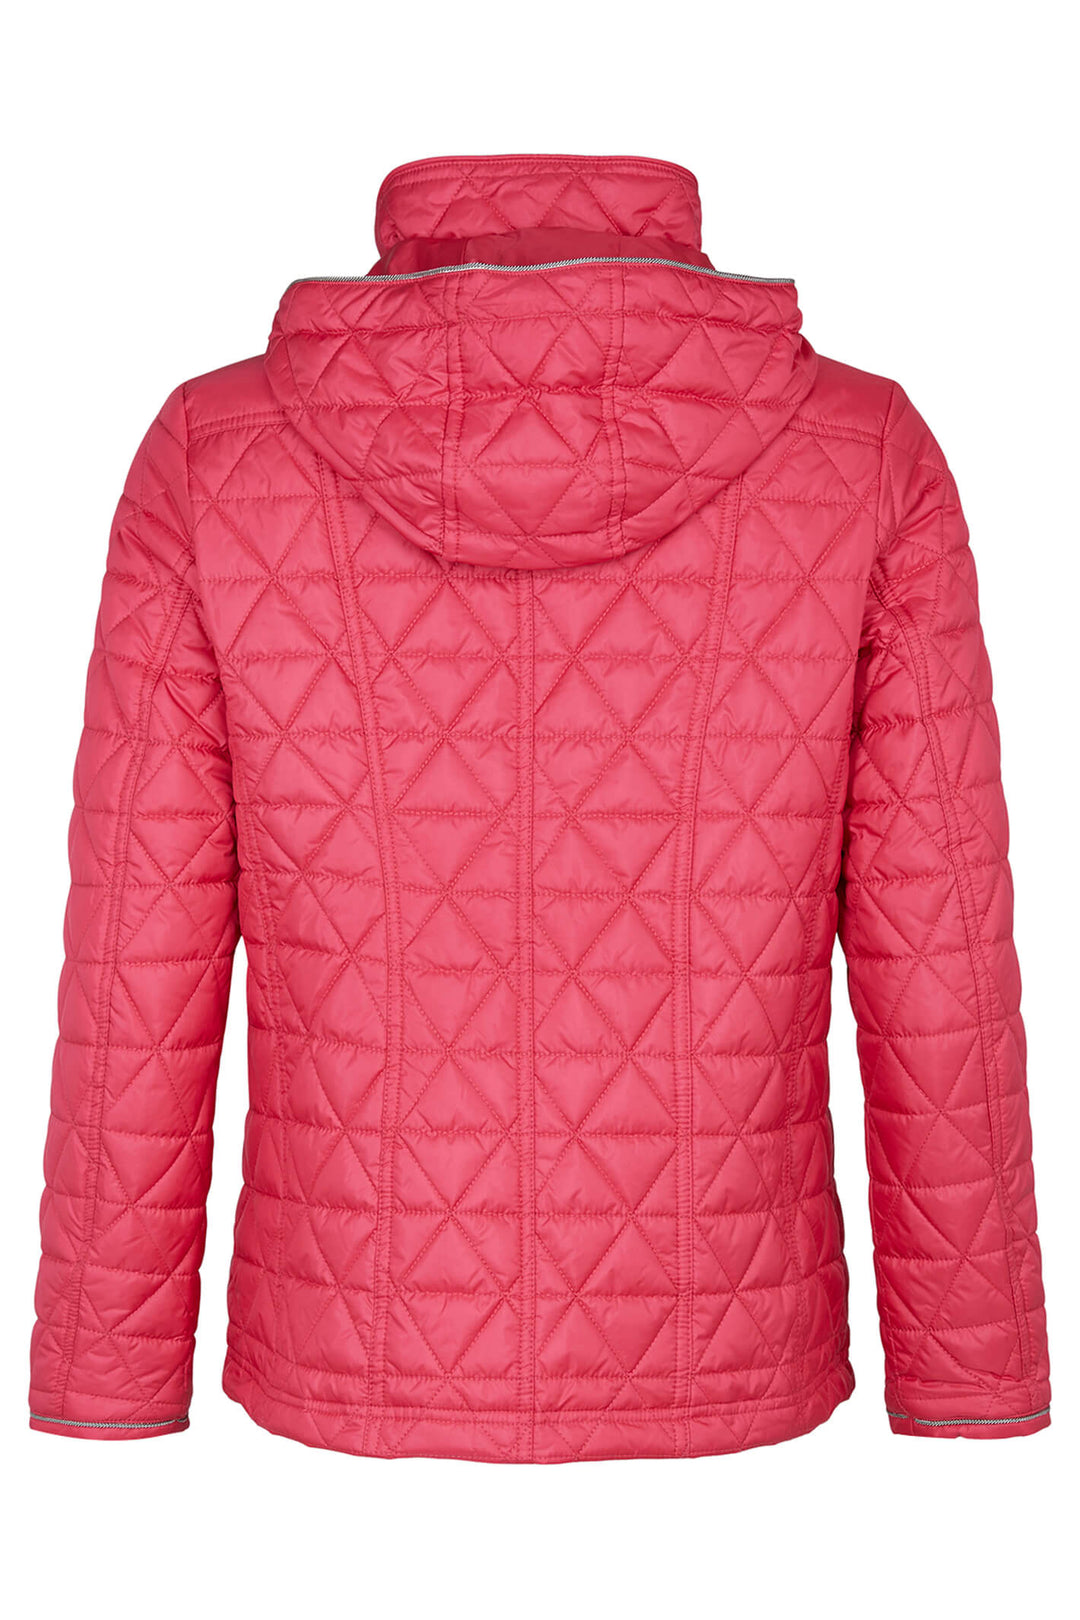 Frandsen 435-321-43 Pink Quilted Hooded High Neck Jacket - Dotique